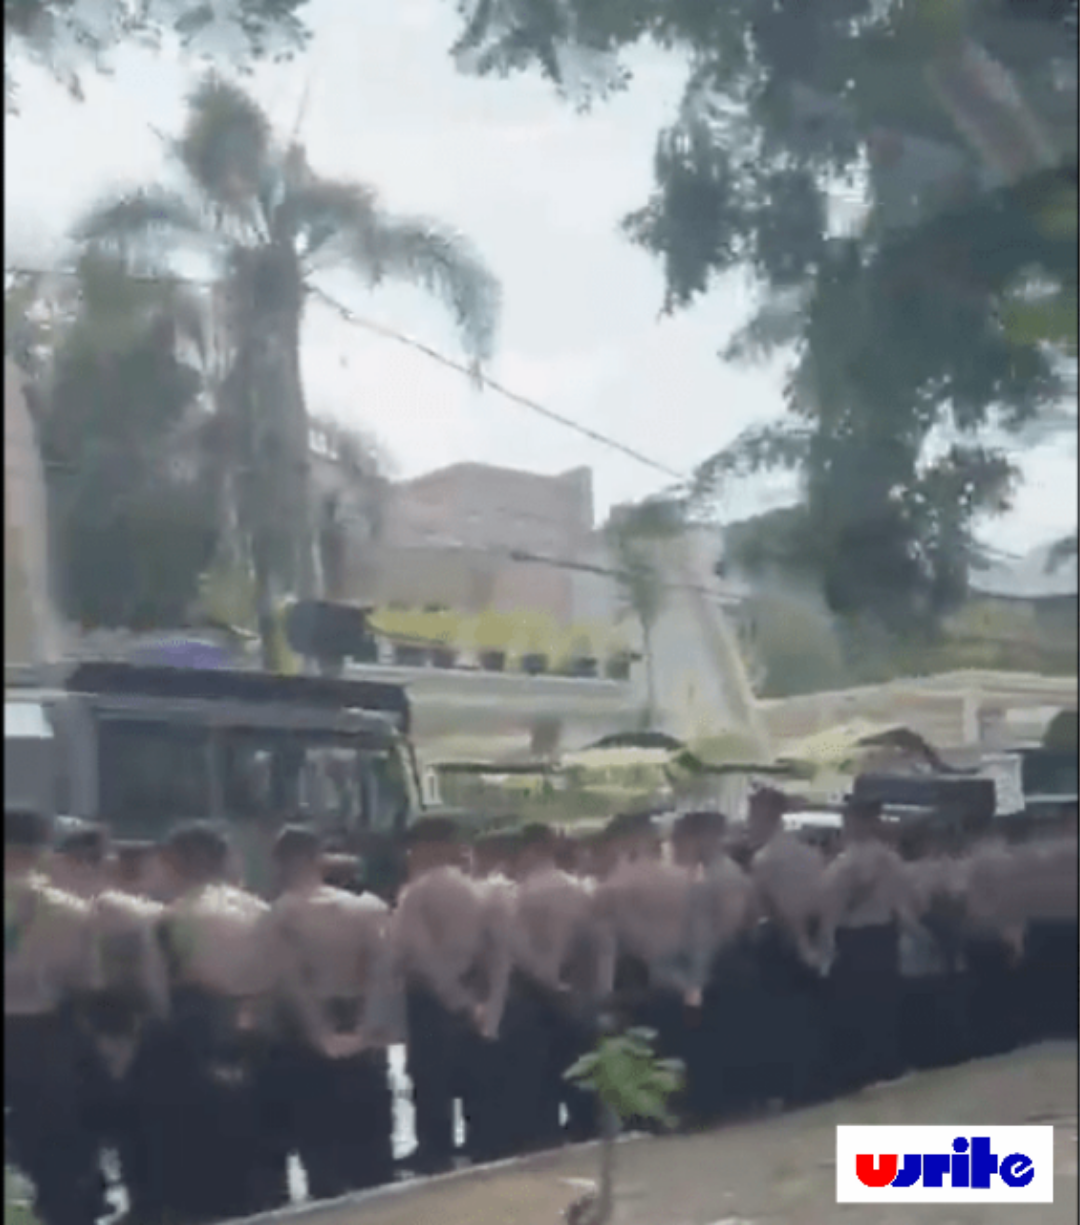 Rumah Boss Kapal Api Dijaga Polisi, Antisipasi Demo Karyawan yang di PHK Minta Pesangon & THR